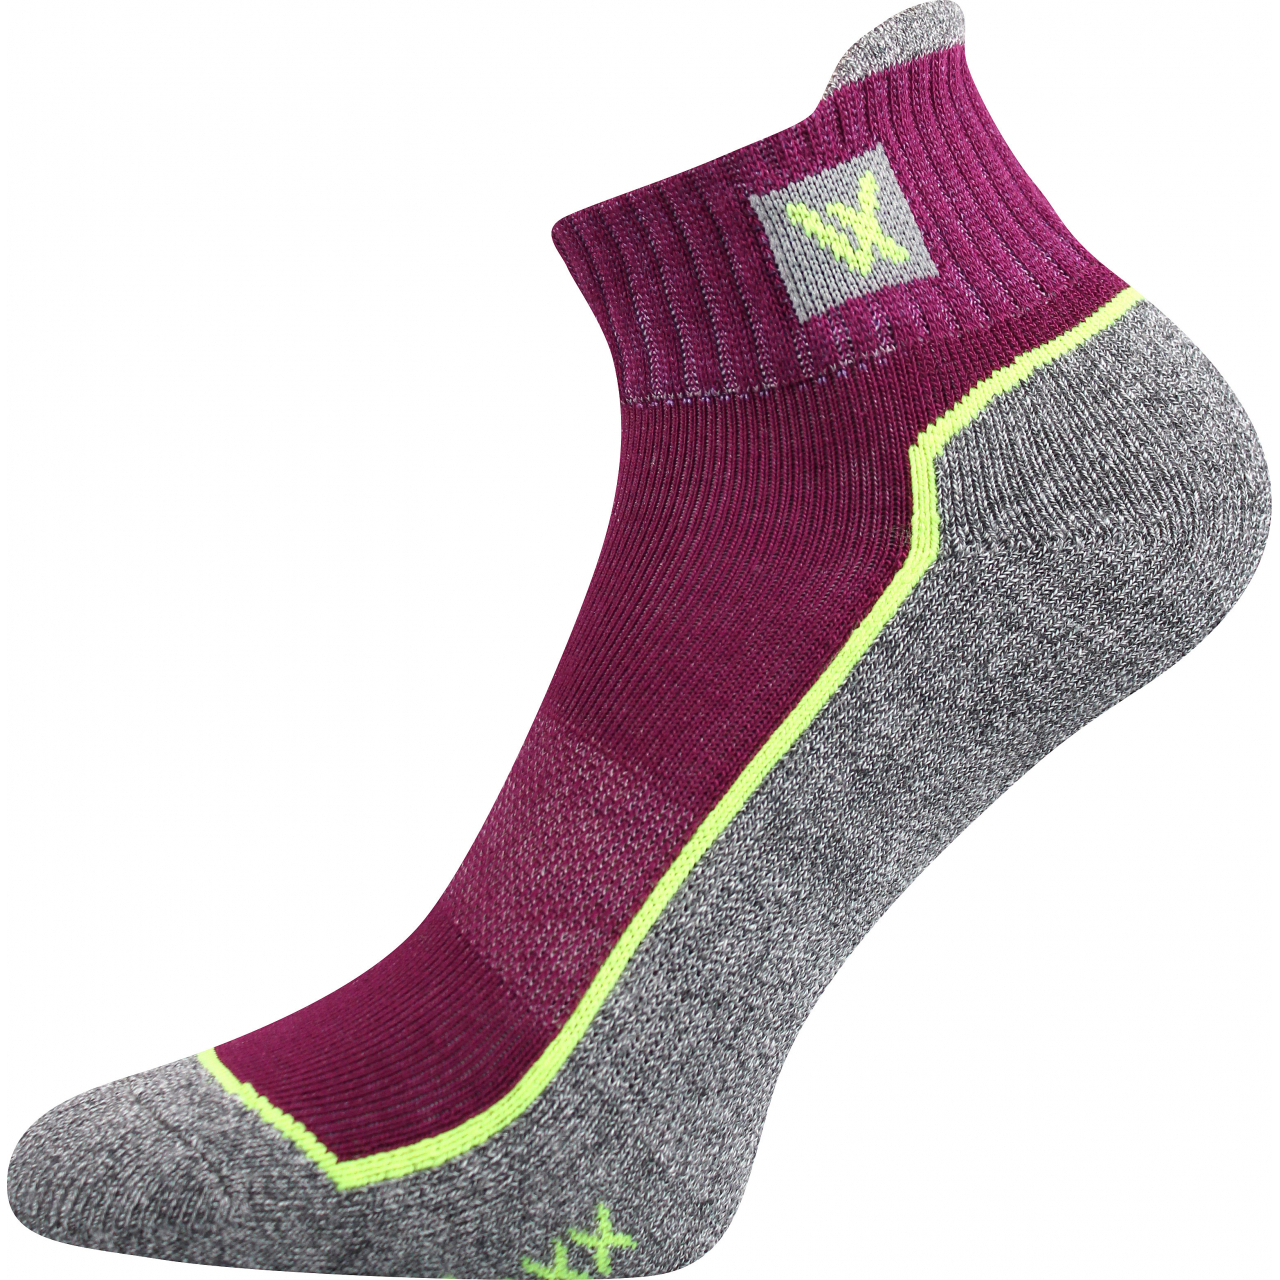 Ponožky unisex sportovní Voxx Nesty 01 - fialové-šedé, 39-42